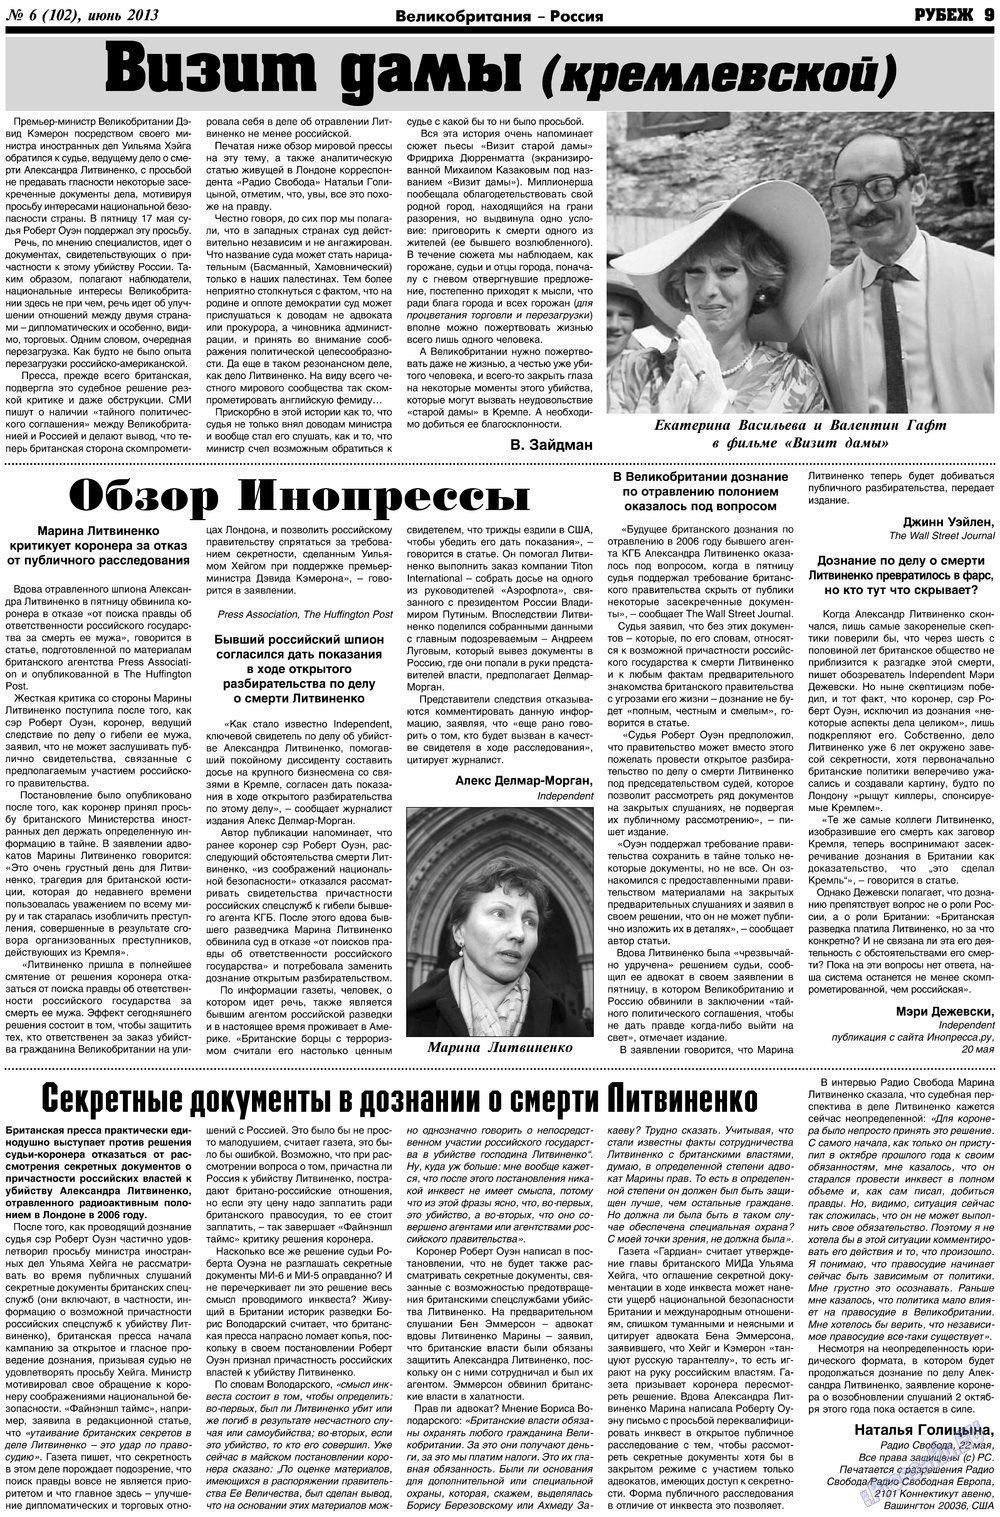 Рубеж (газета). 2013 год, номер 6, стр. 9